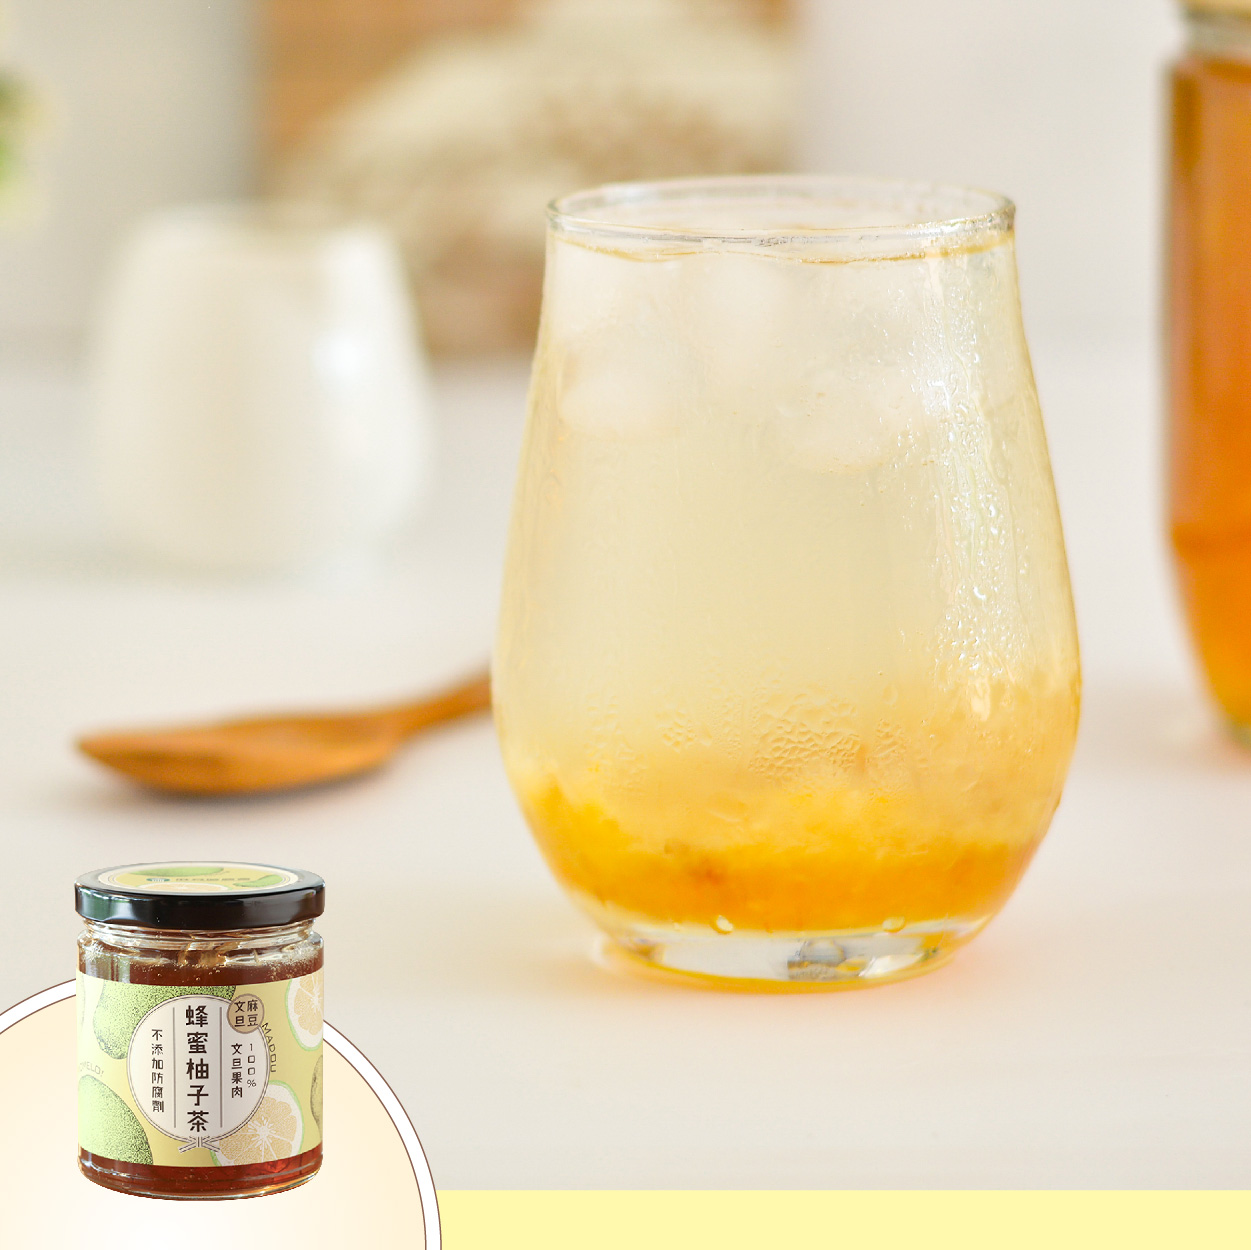 麻豆區農會 蜂蜜柚子茶 精選優質麻豆文旦 熱量低營養高 酸甜迷人的香氣讓你愛不釋手